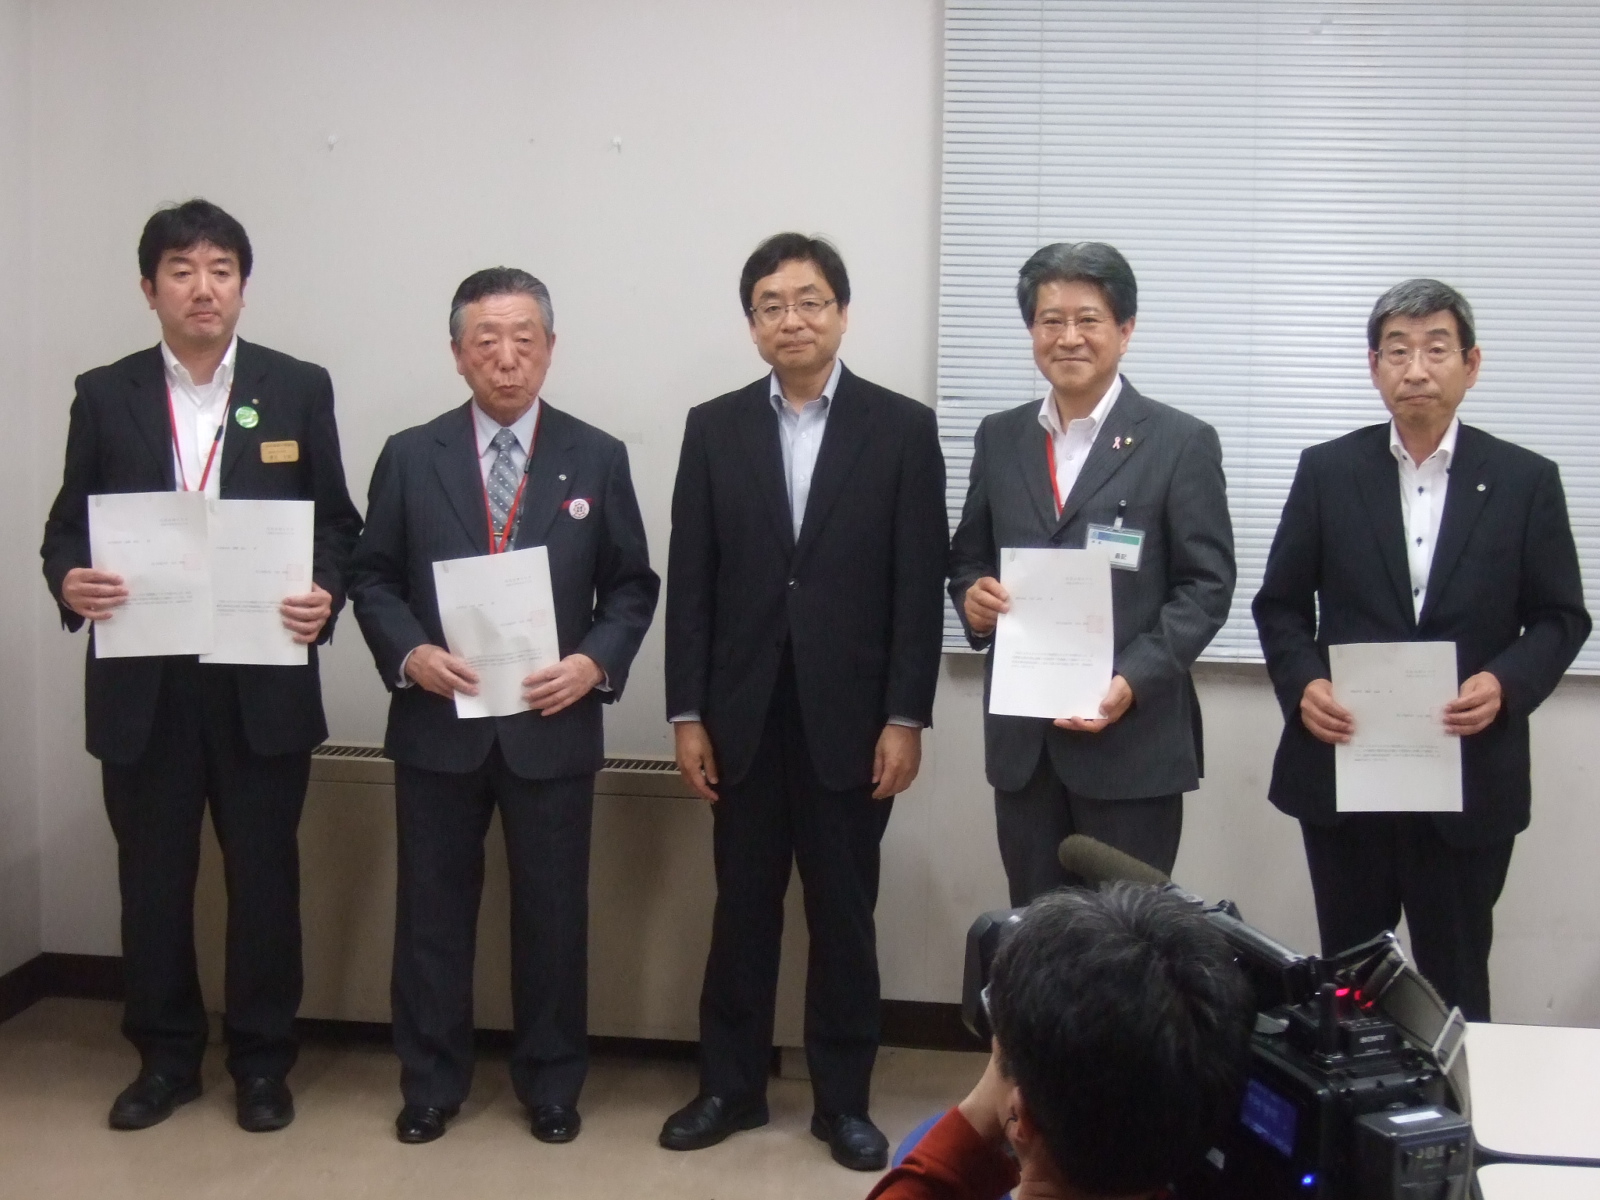 連結許可書を持った小沢市長と4名の男性が横一列に並んで立っている集合写真